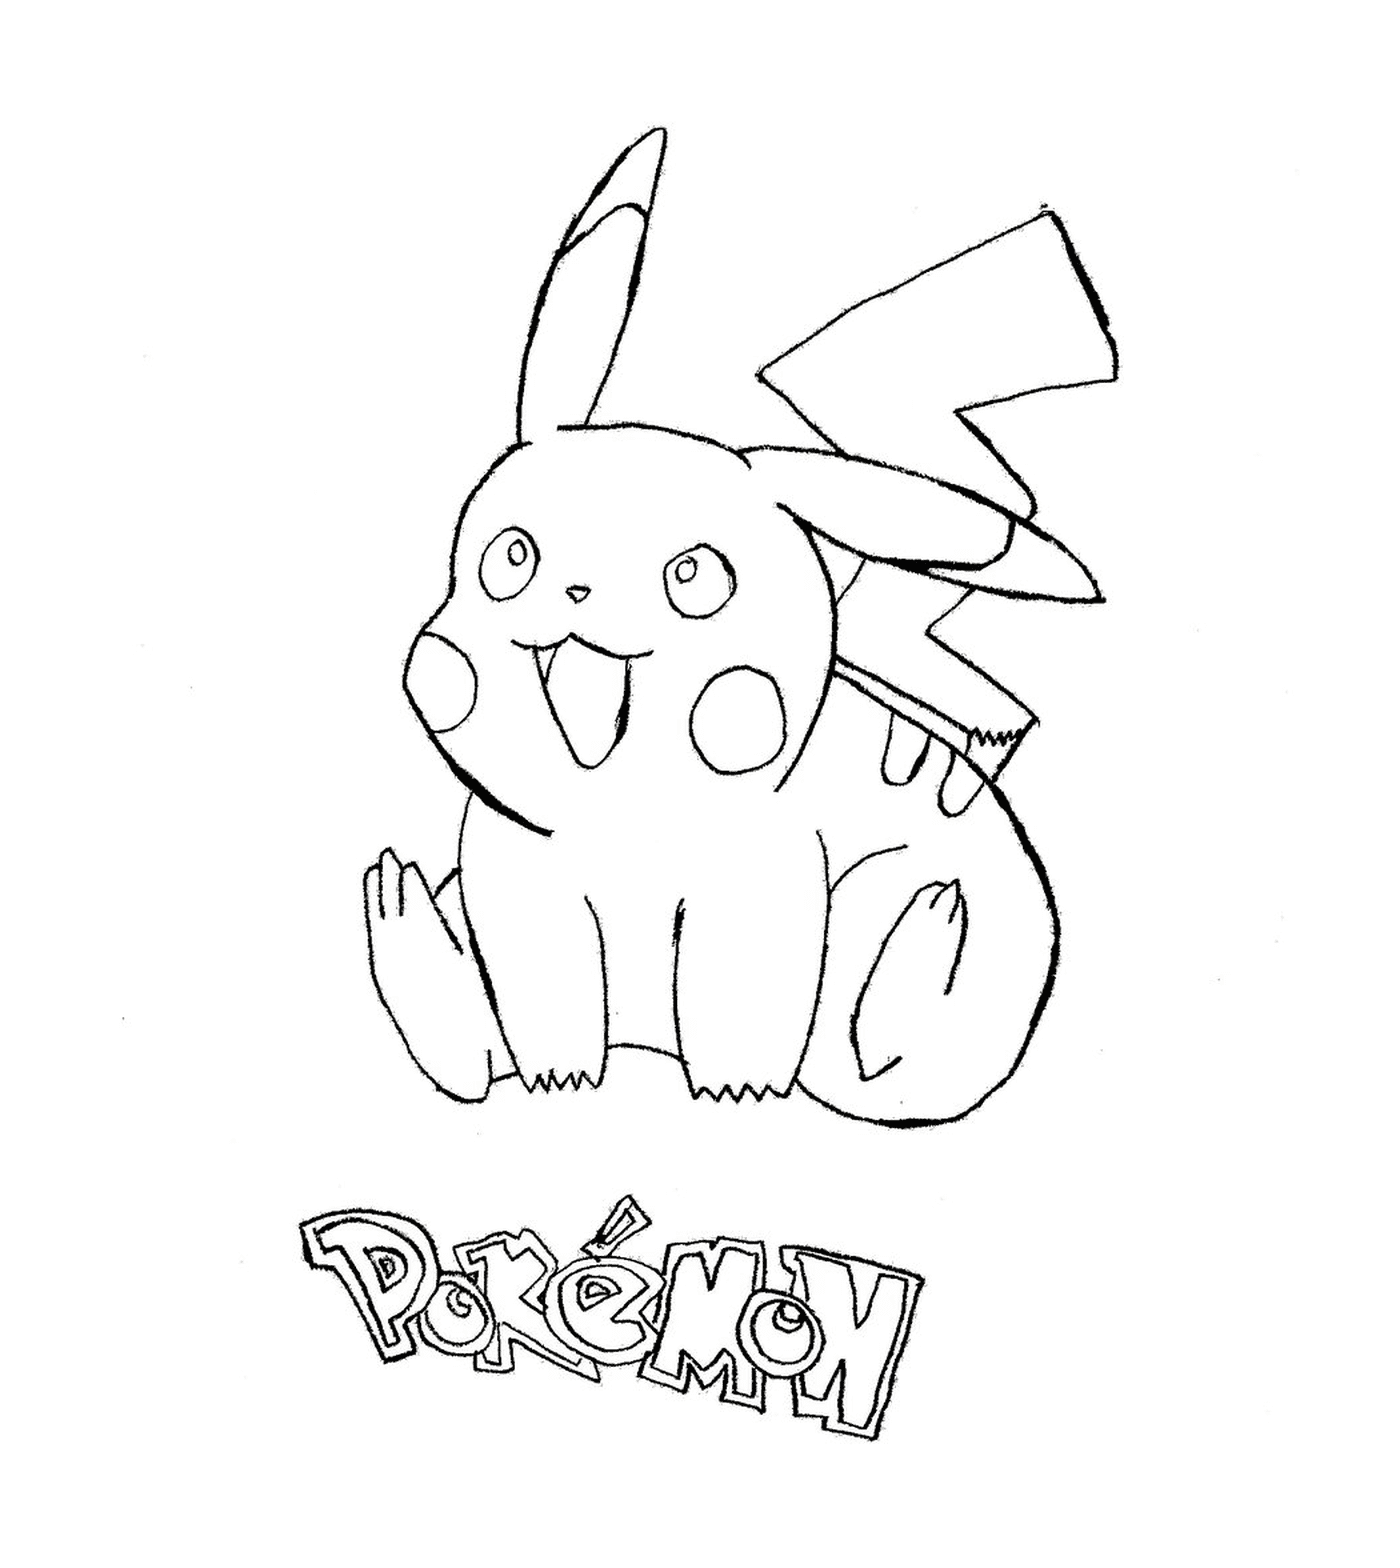  Pikachu, un pokémon encantador 